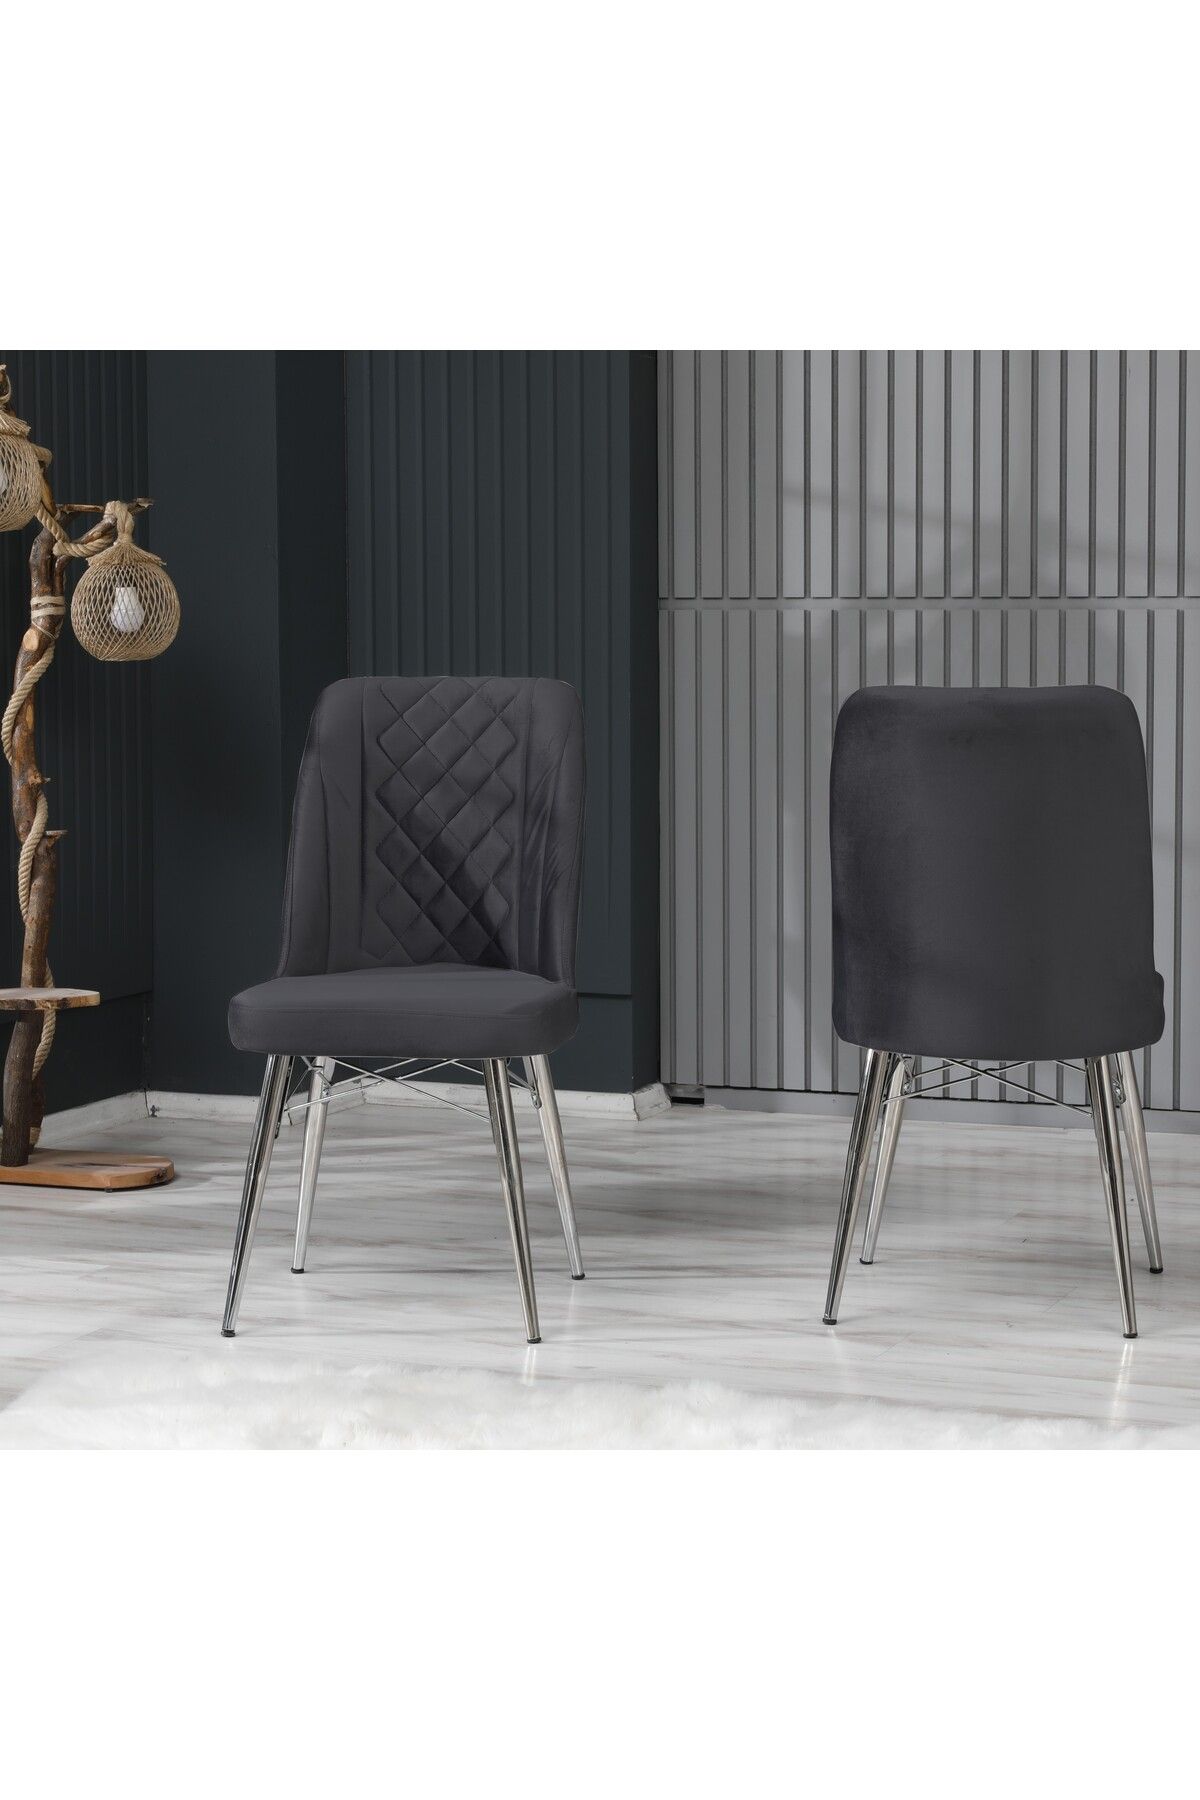 EZU Salon Mutfak Sandalyeleri Seher Kaputaneli Antrasit Silver Ayaklı